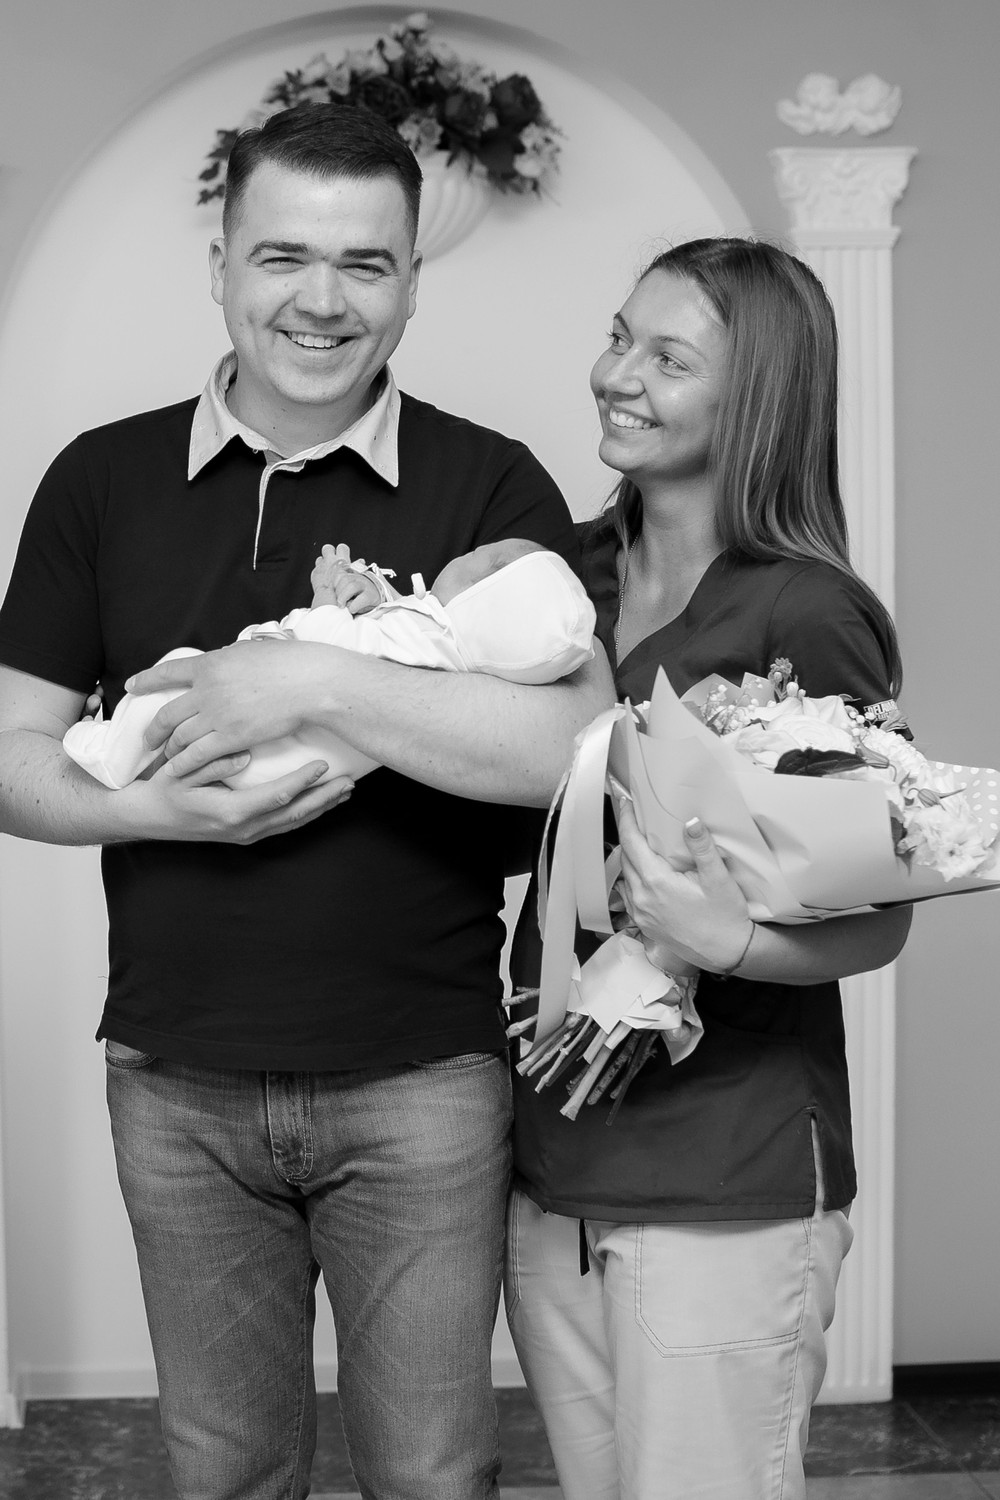 ПОРТФОЛИО - ВЫПИСКА ИЗ РОДДОМА  - первая фотостудия для новорожденных в Курскe, фотостудия для новорожденных Алены Пономаревой, newborn_kursk, профессиональный фотограф новорожденных, первая фотосессия, лучший фотограф новорожденных в Курске